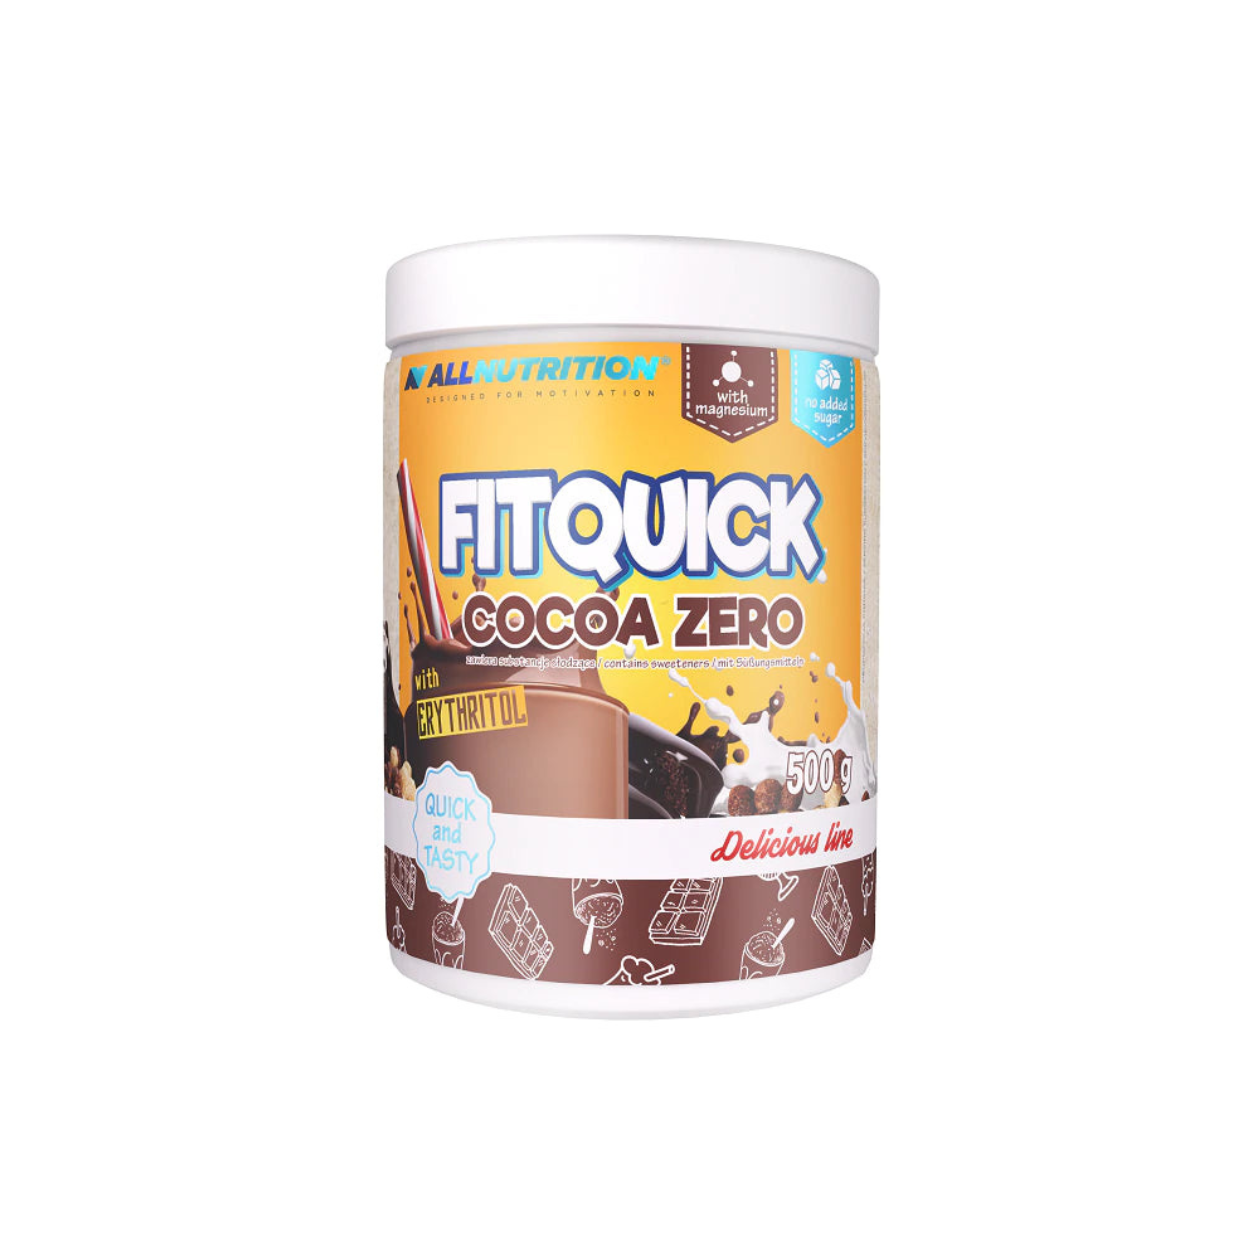 Allnutrition Fitquick Cocoa Zero (500g)